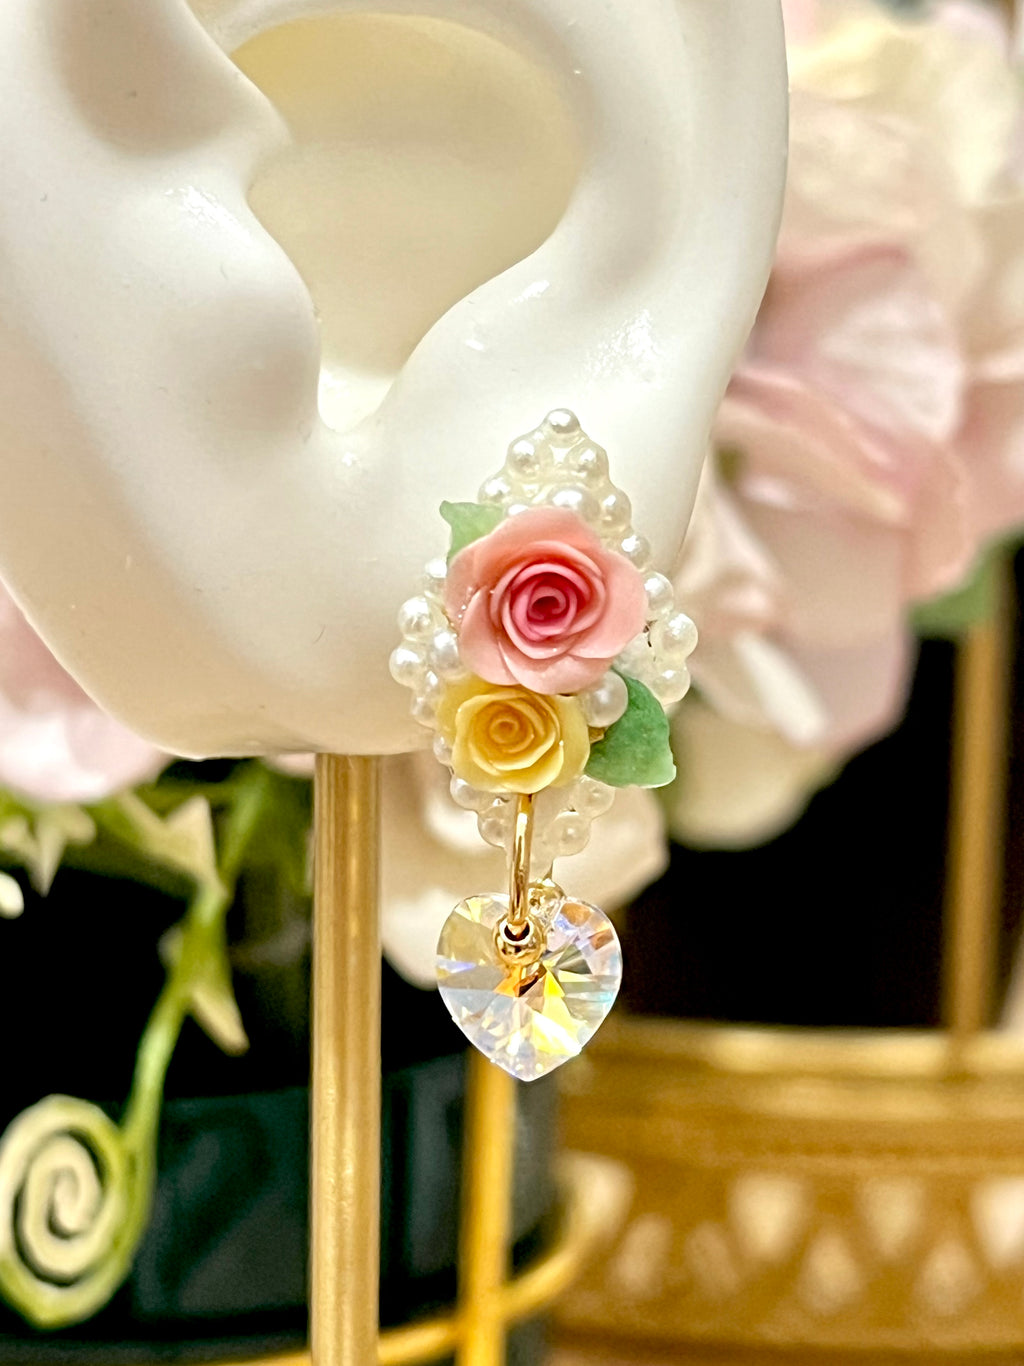 My love in Roses Earrings